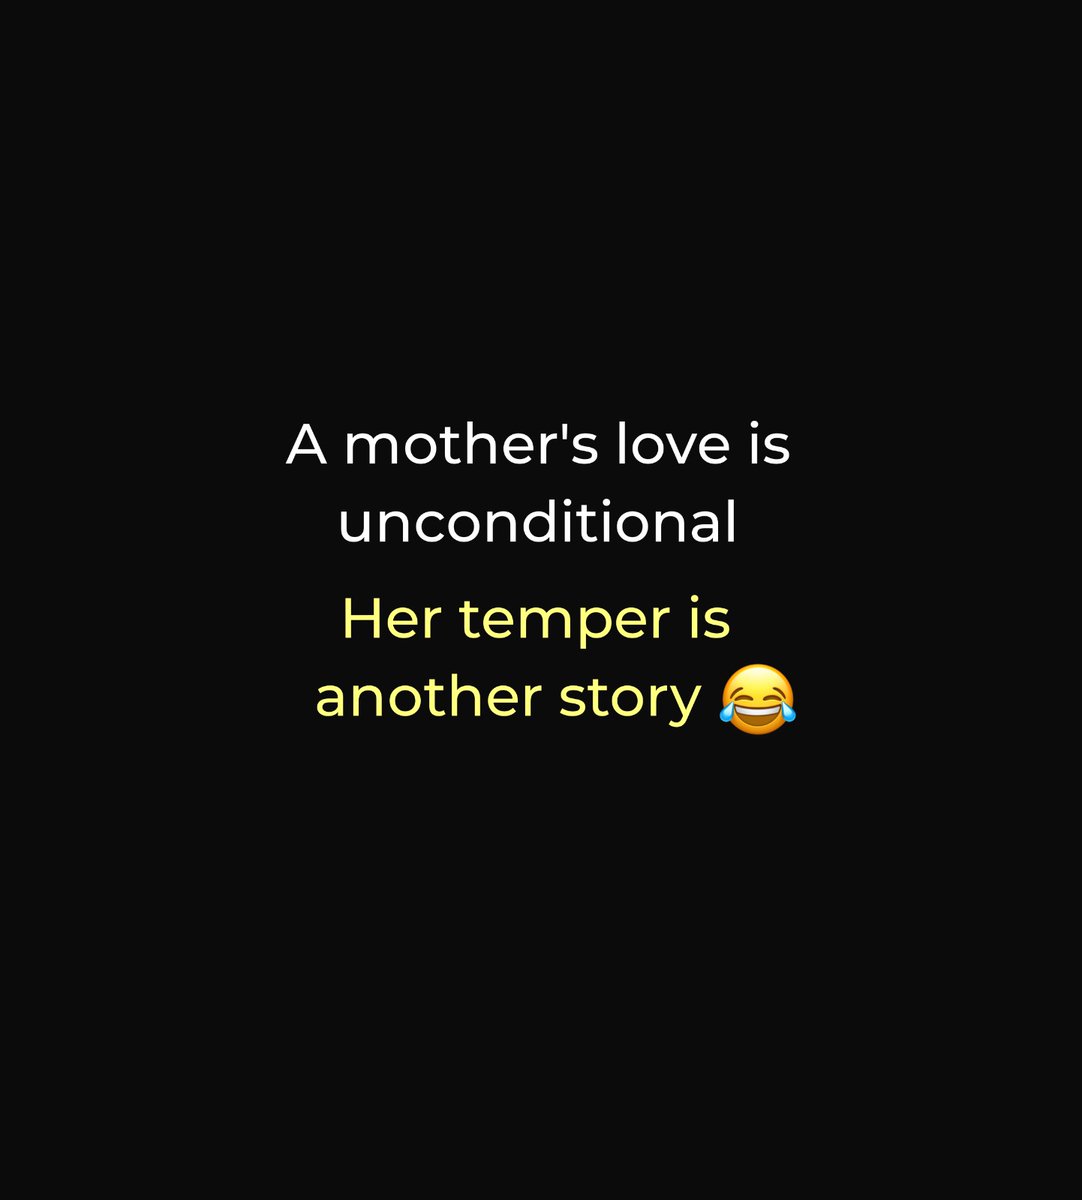 Her temper 😂